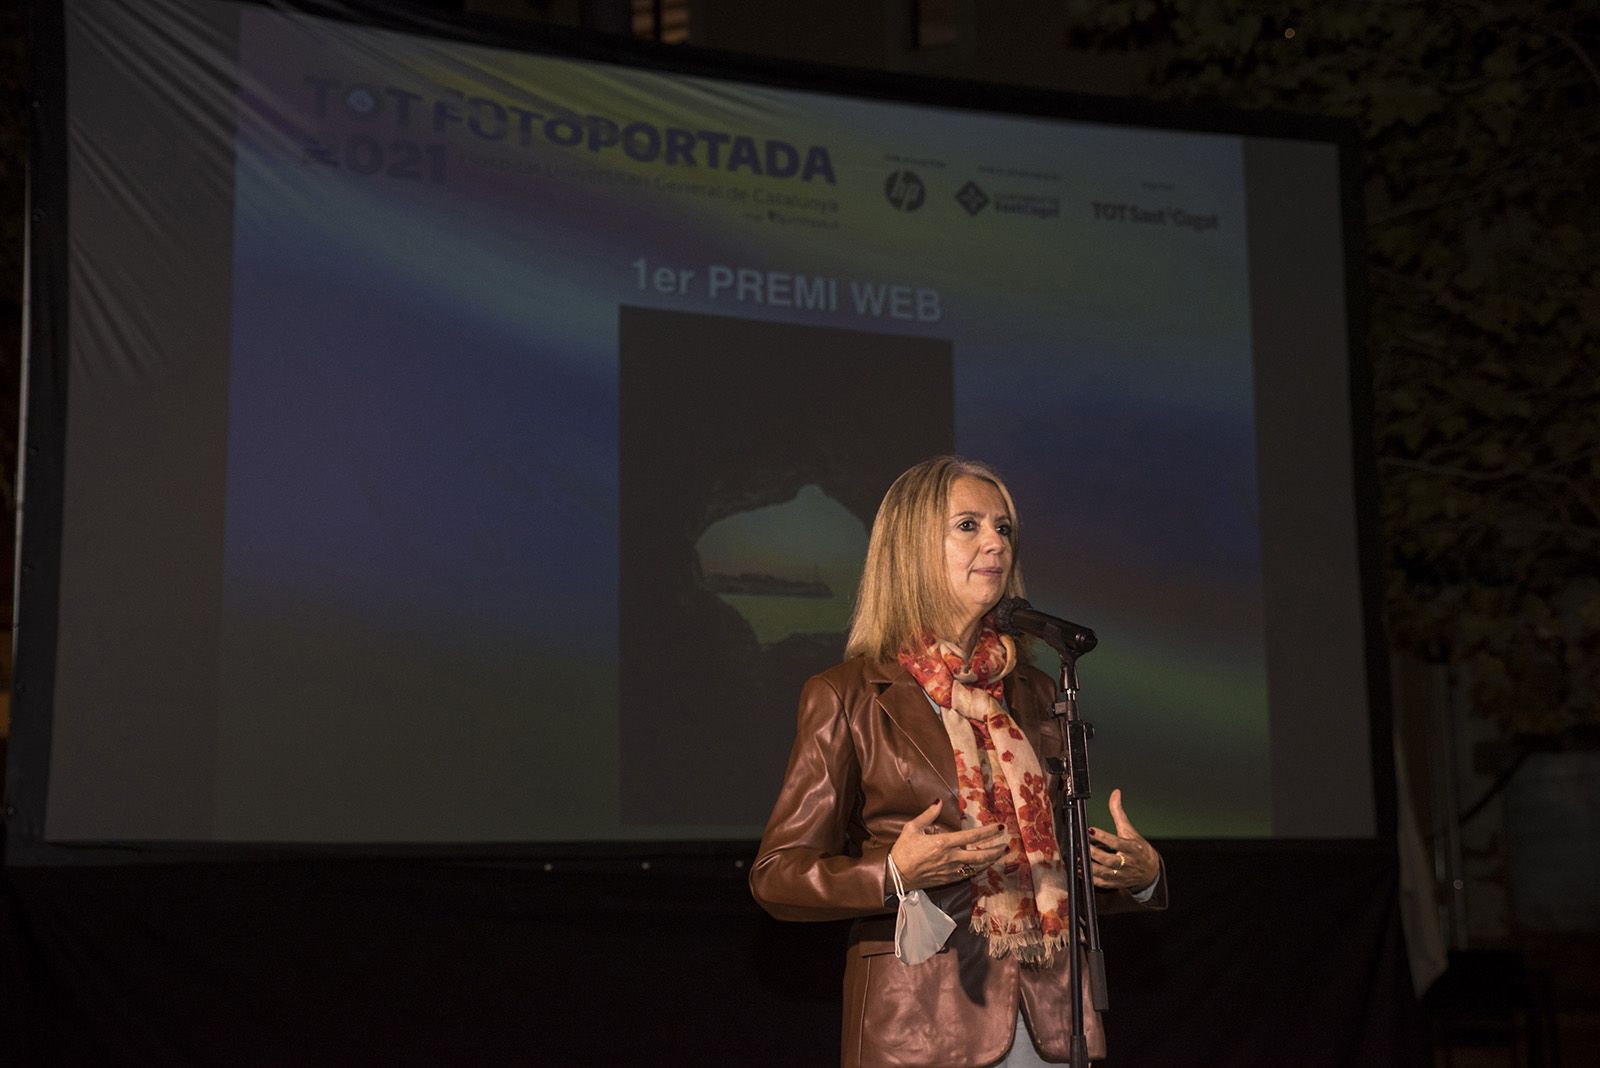 L'alcaldessa Mireia Ingla a l'entrega de premis del TOT Fotoportada 2021. Foto: Bernat Millet.